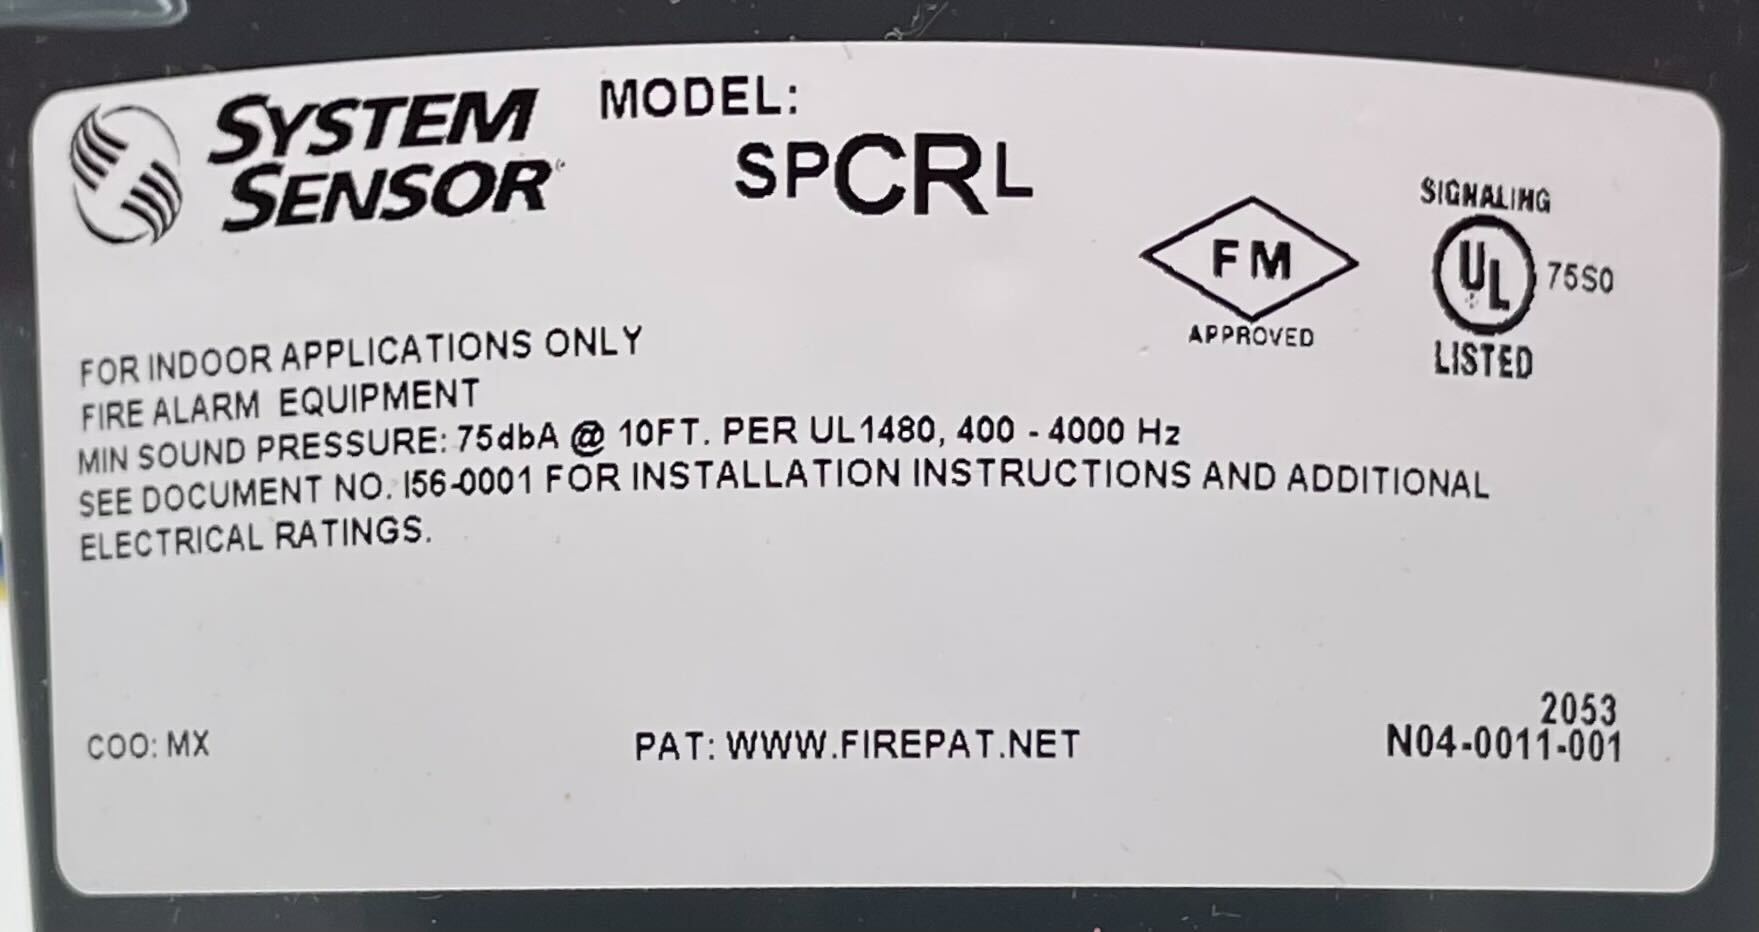 System Sensor SPCRL - The Fire Alarm Supplier